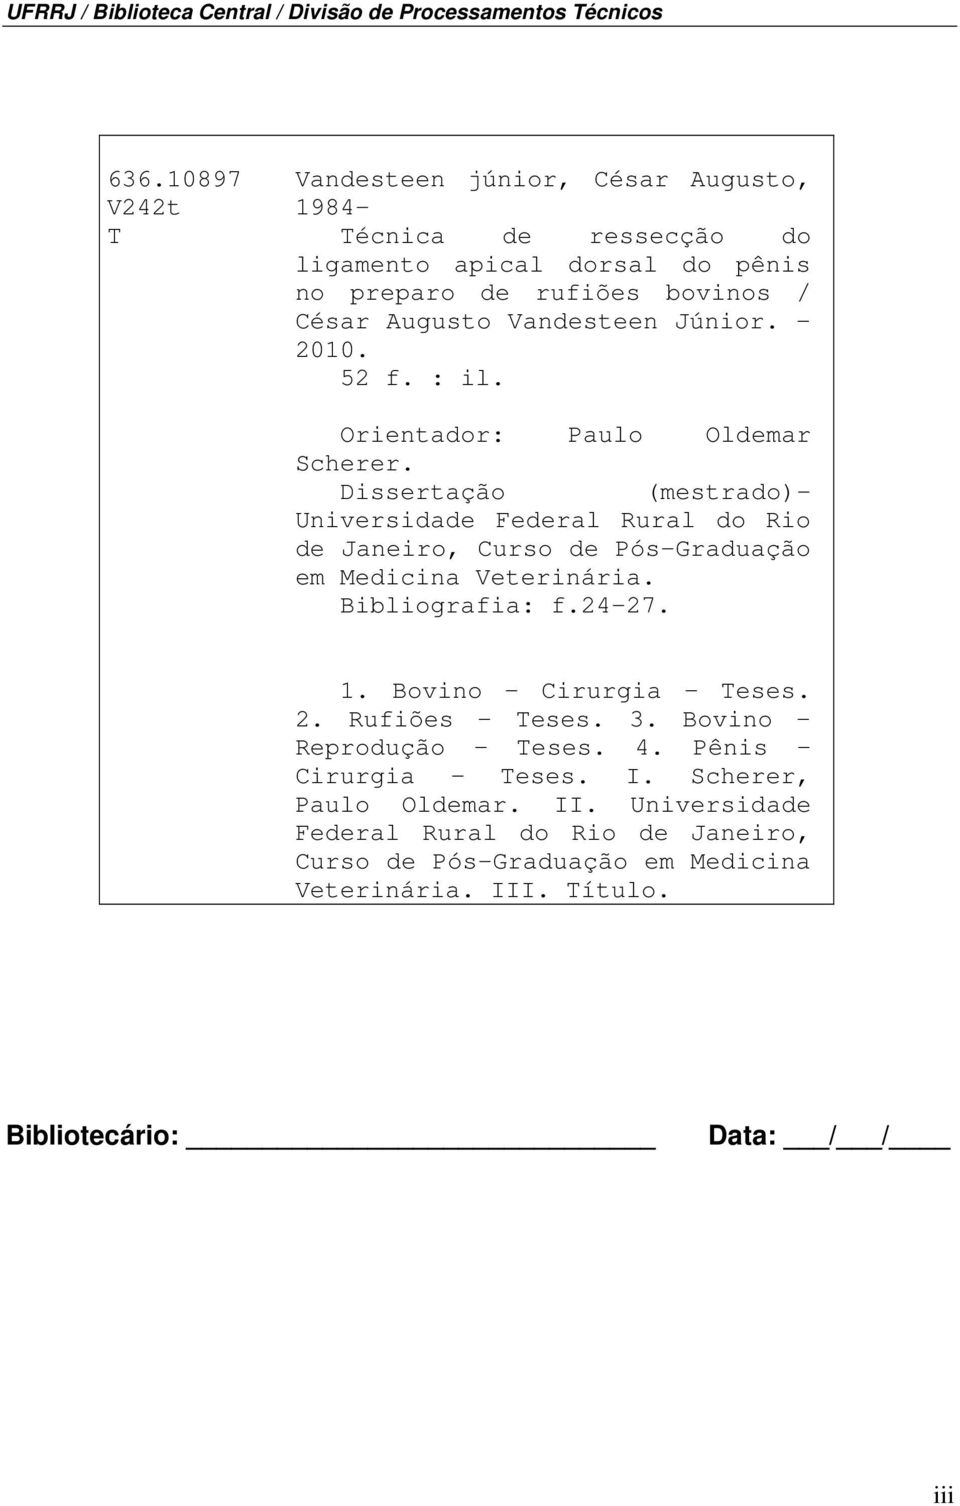 2010. 52 f. : il. Orientador: Paulo Oldemar Scherer. Dissertação (mestrado)- Universidade Federal Rural do Rio de Janeiro, Curso de Pós-Graduação em Medicina Veterinária.